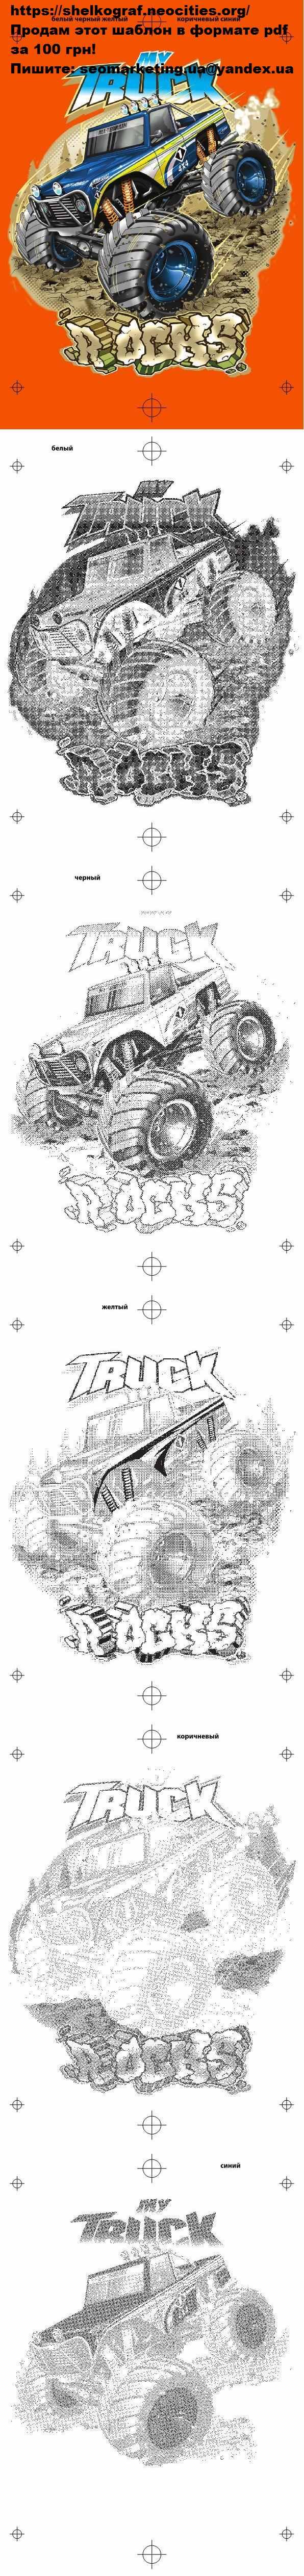 my_truck_rocks_16.jpg